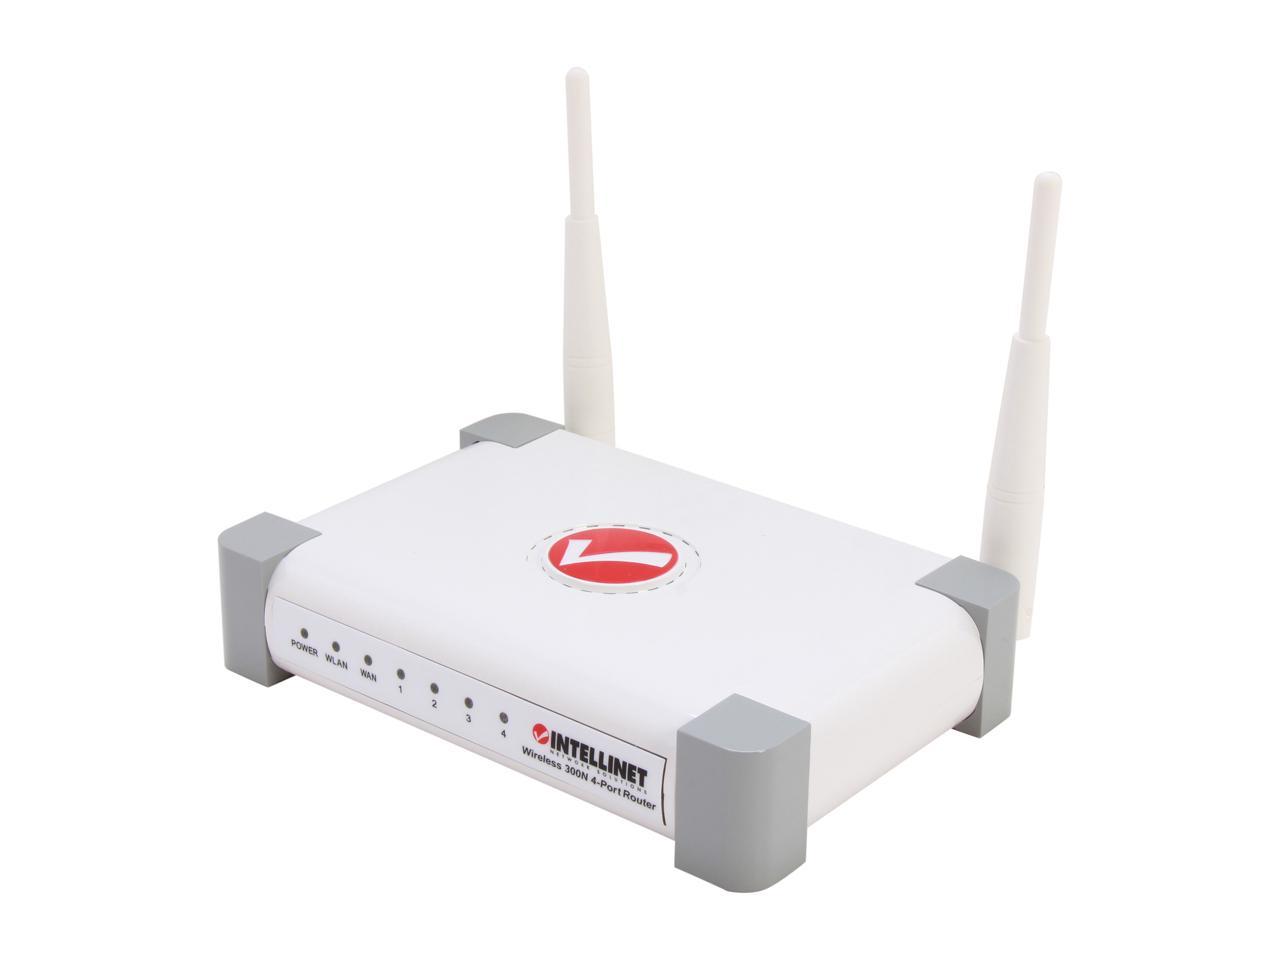 intellinet wireless 300n dd-wrt vpn